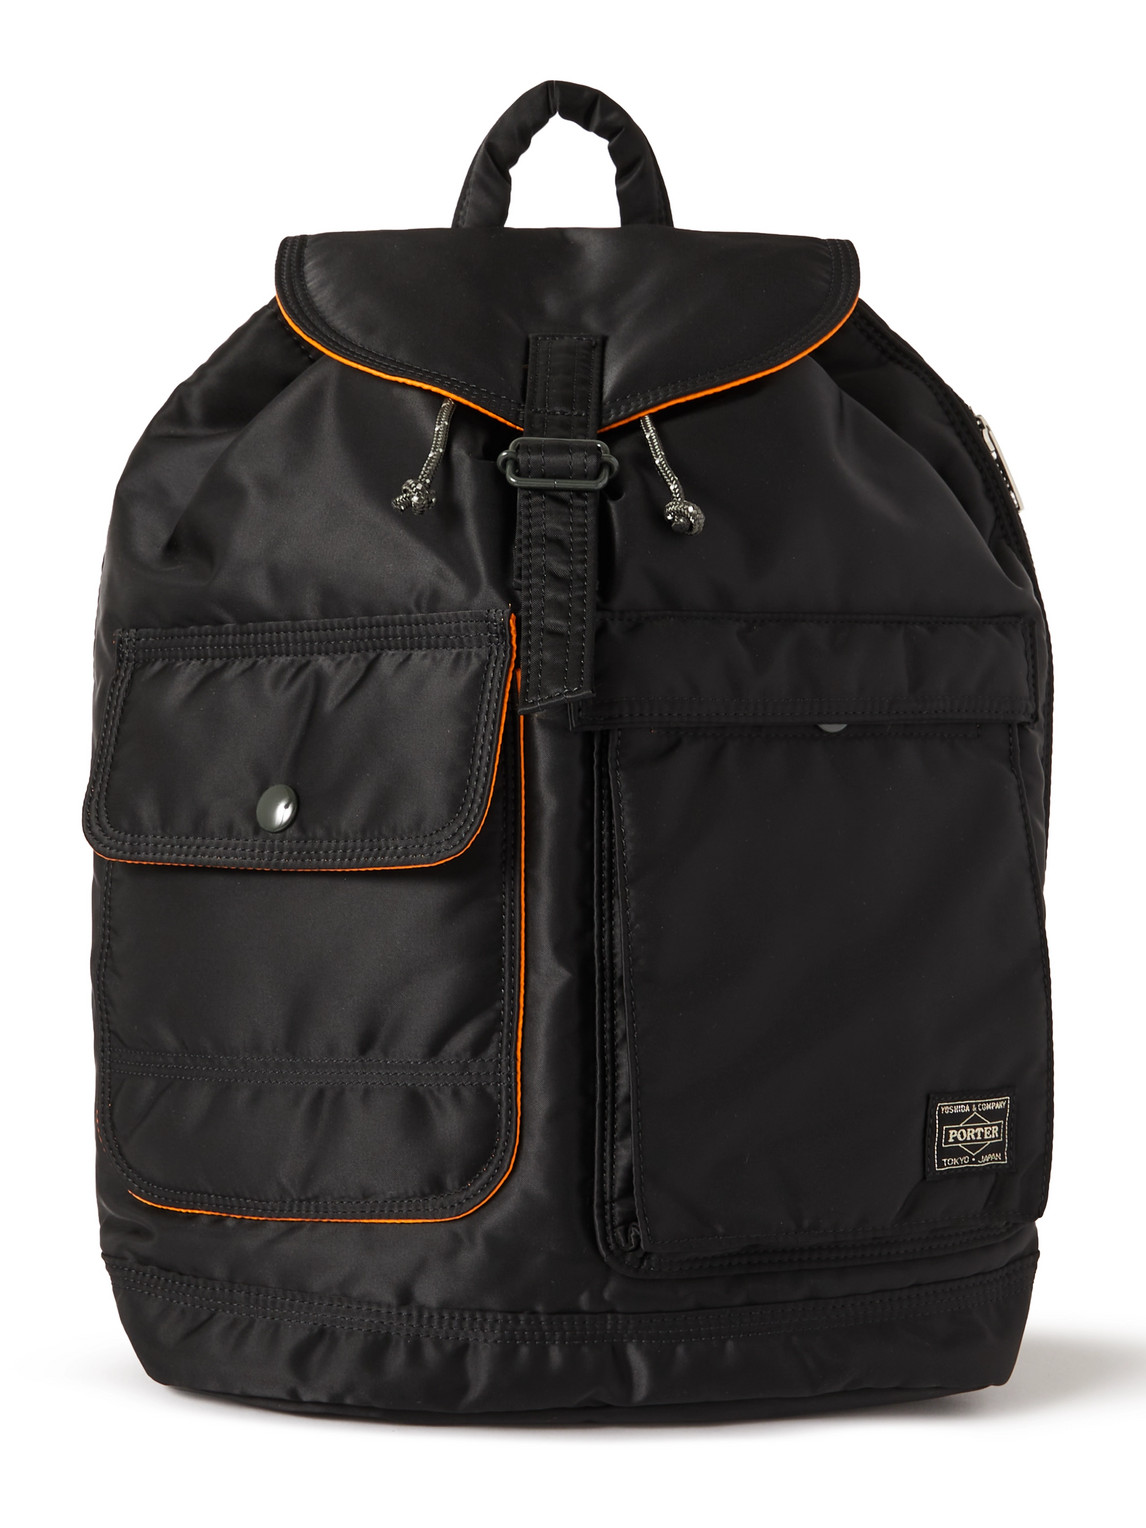 Porter, Yoshida & Co Tanker Nylon Backpack In Black